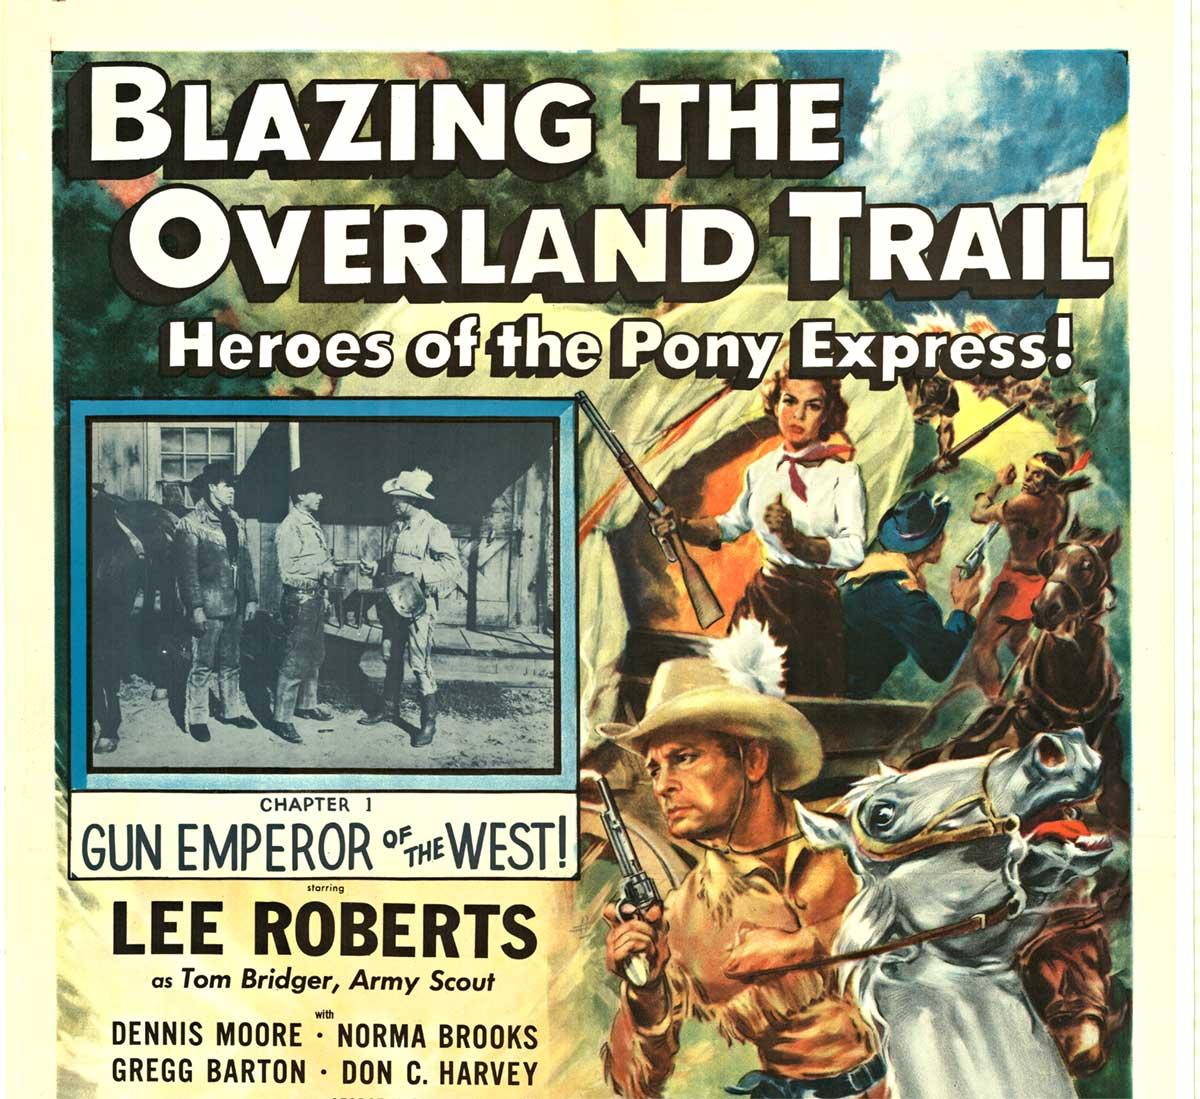 Affiche vintage du film « Blazing the Overland Trail », chapitre 1, - Print de Unknown